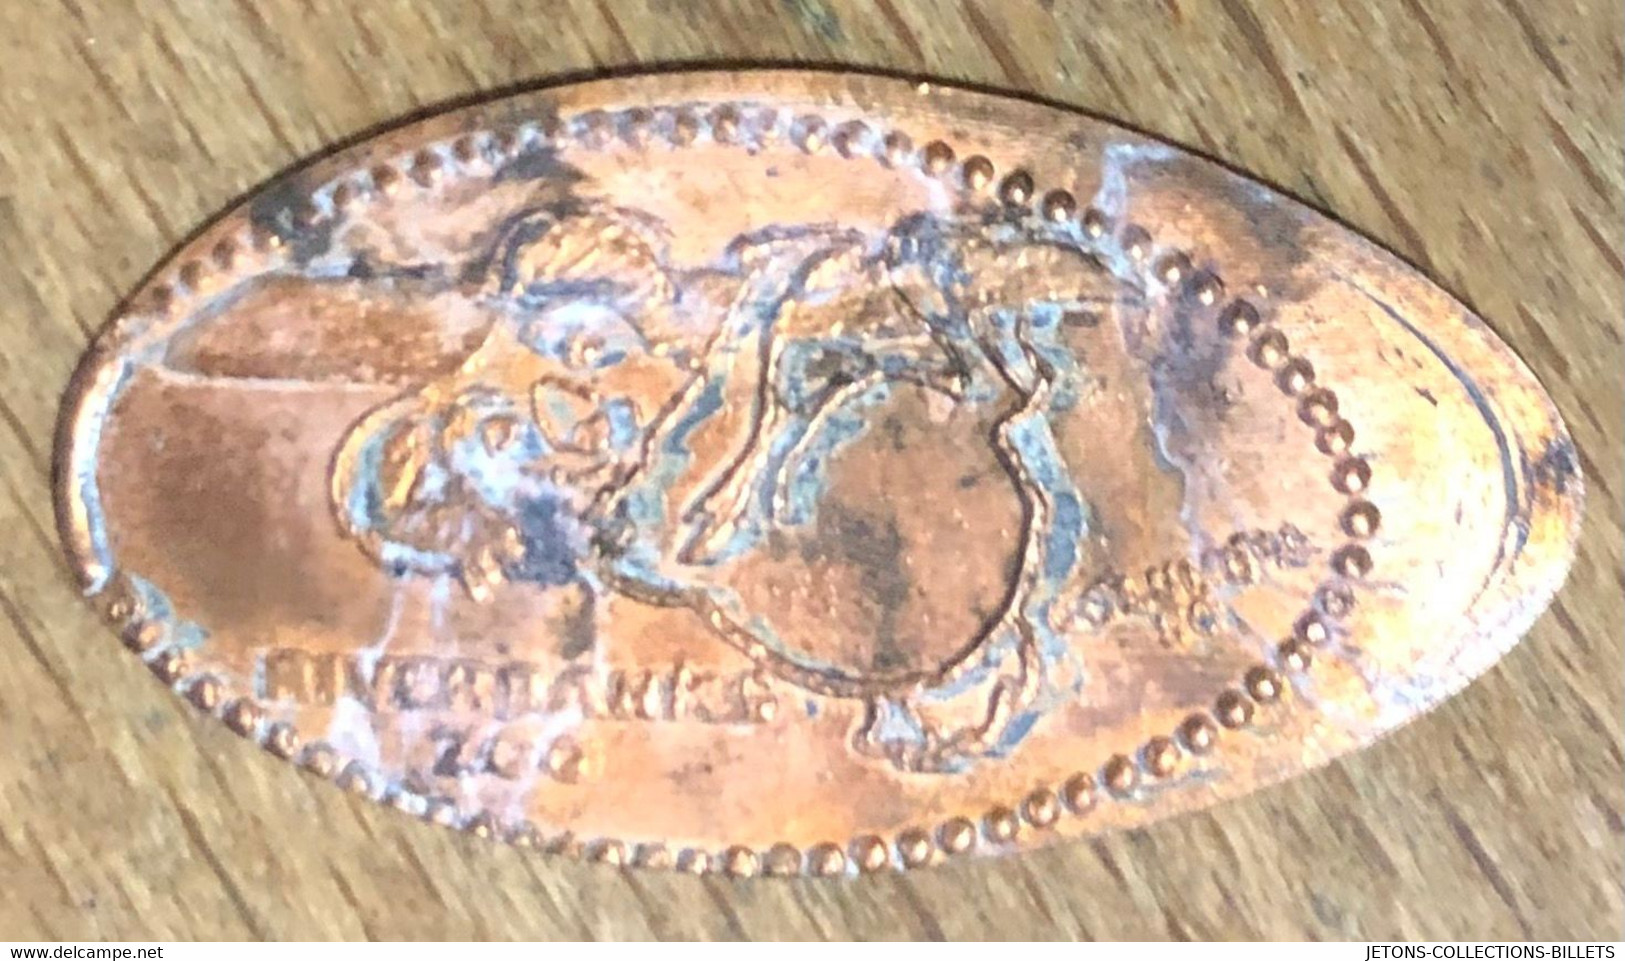 ÉTATS-UNIS USA RIVERBANKS ZOO COLUMBIA SC KOALA PIÈCE ÉCRASÉE PENNY ELONGATED COIN MEDAILLE TOURISTIQUE MEDALS TOKENS - Souvenir-Medaille (elongated Coins)